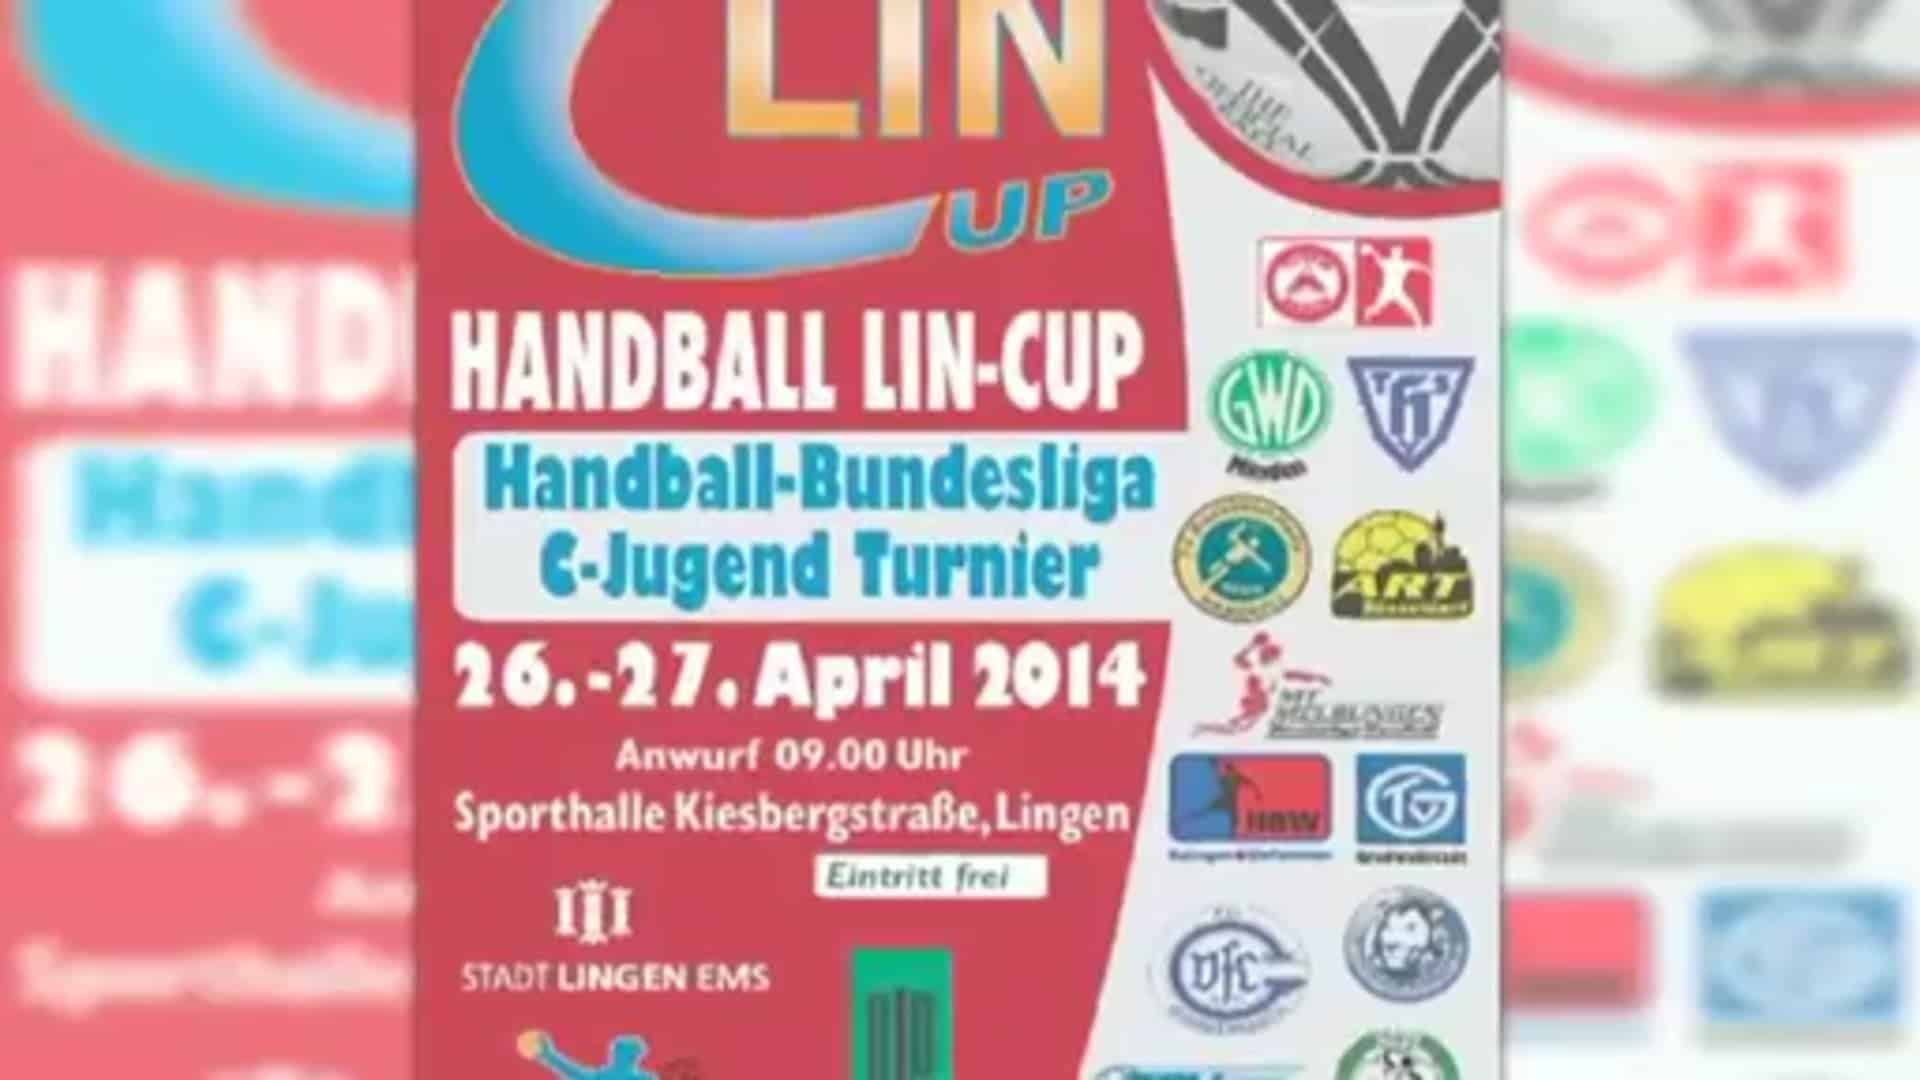 LIN CUP 2014 in Lingen